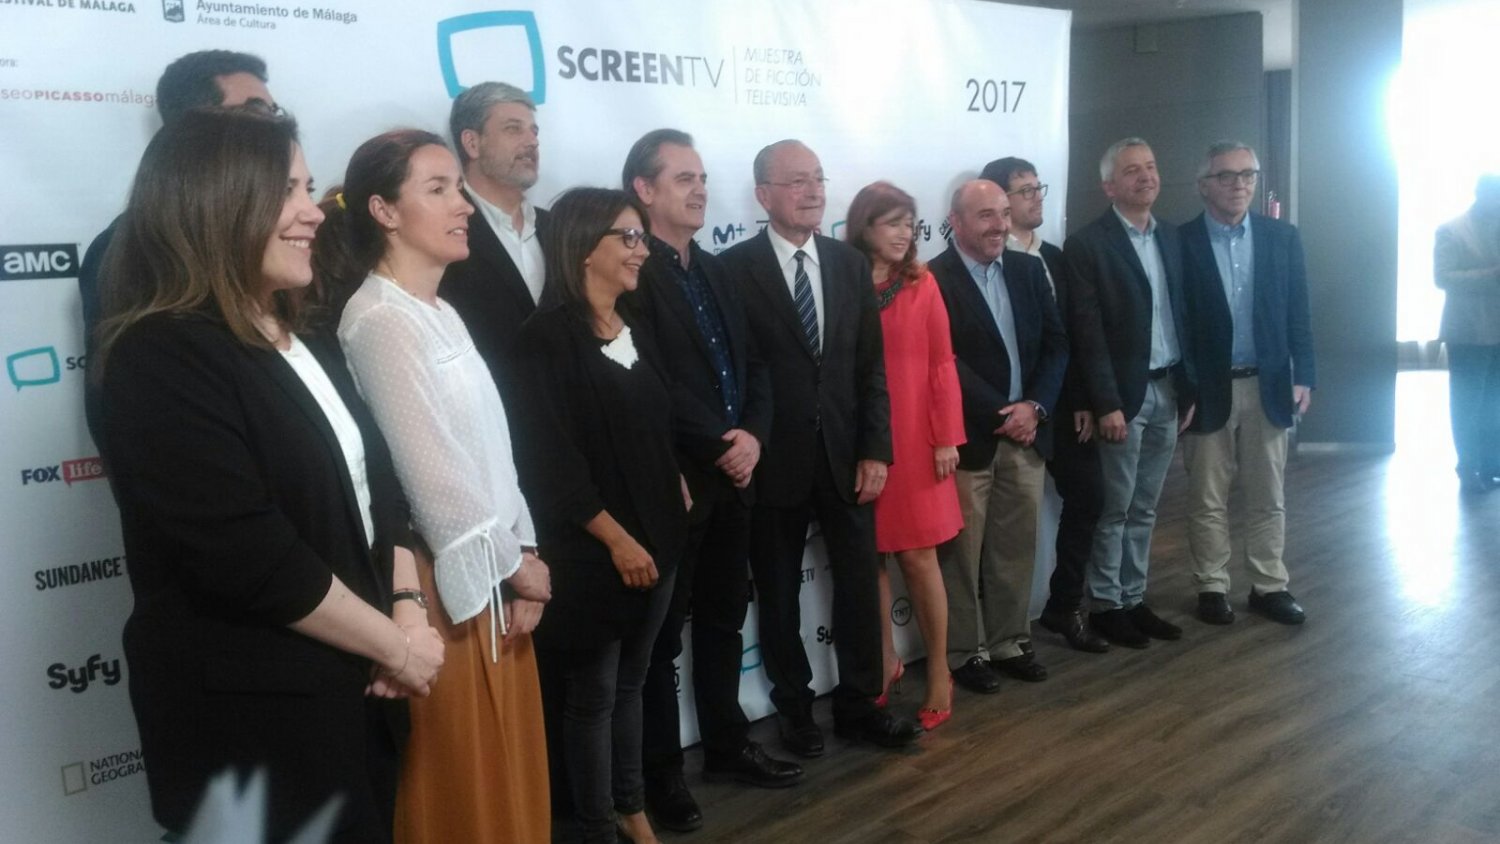 La cuarta edición de SCREEN TV 2017 trae a Málaga la mejor ficción televisiva